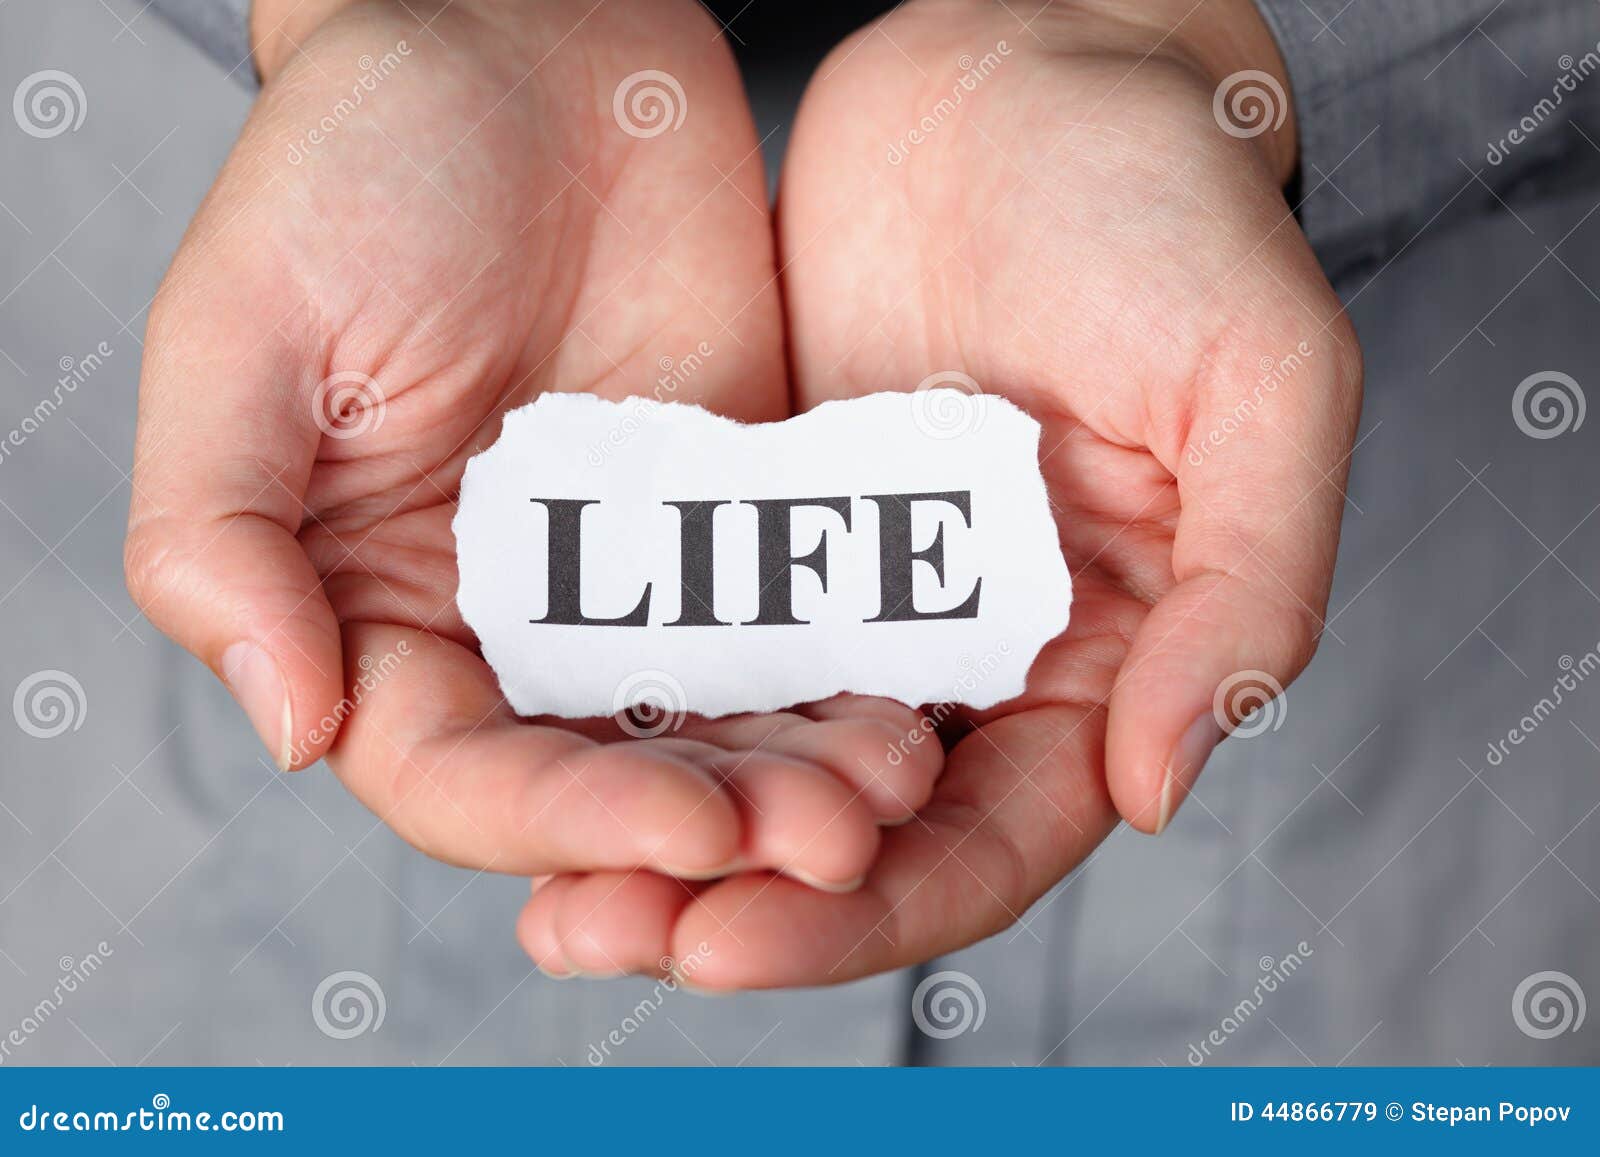 Слова со словом life. Слово Life. Картинка со словом Life. Красиво слово Life. Слова про жизнь.